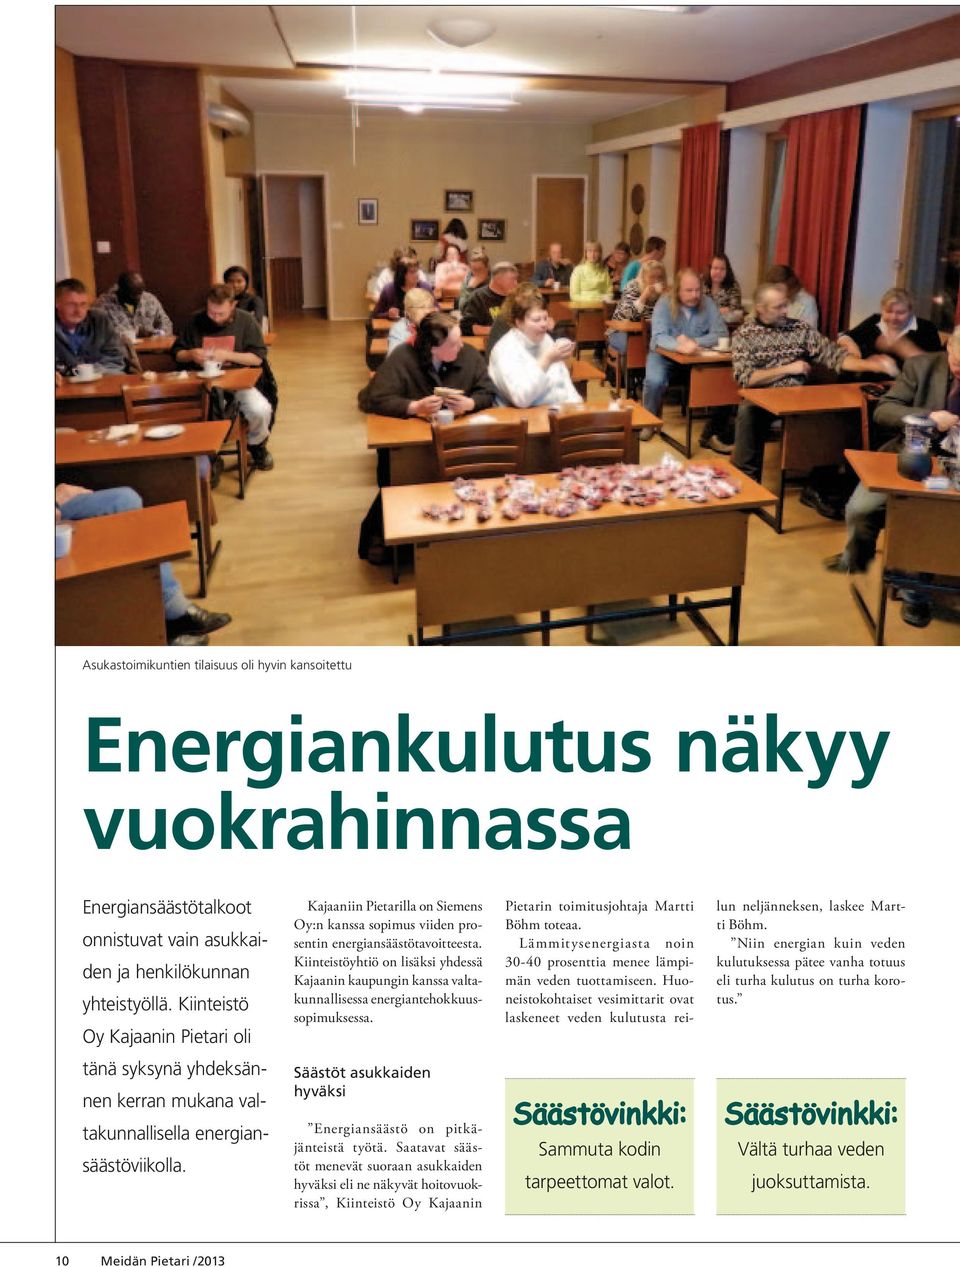 Kiinteistöyhtiö on lisäksi yhdessä Kajaanin kaupungin kanssa valtakunnallisessa energiantehokkuussopimuksessa. Pietarin toimitusjohtaja Martti Böhm toteaa.